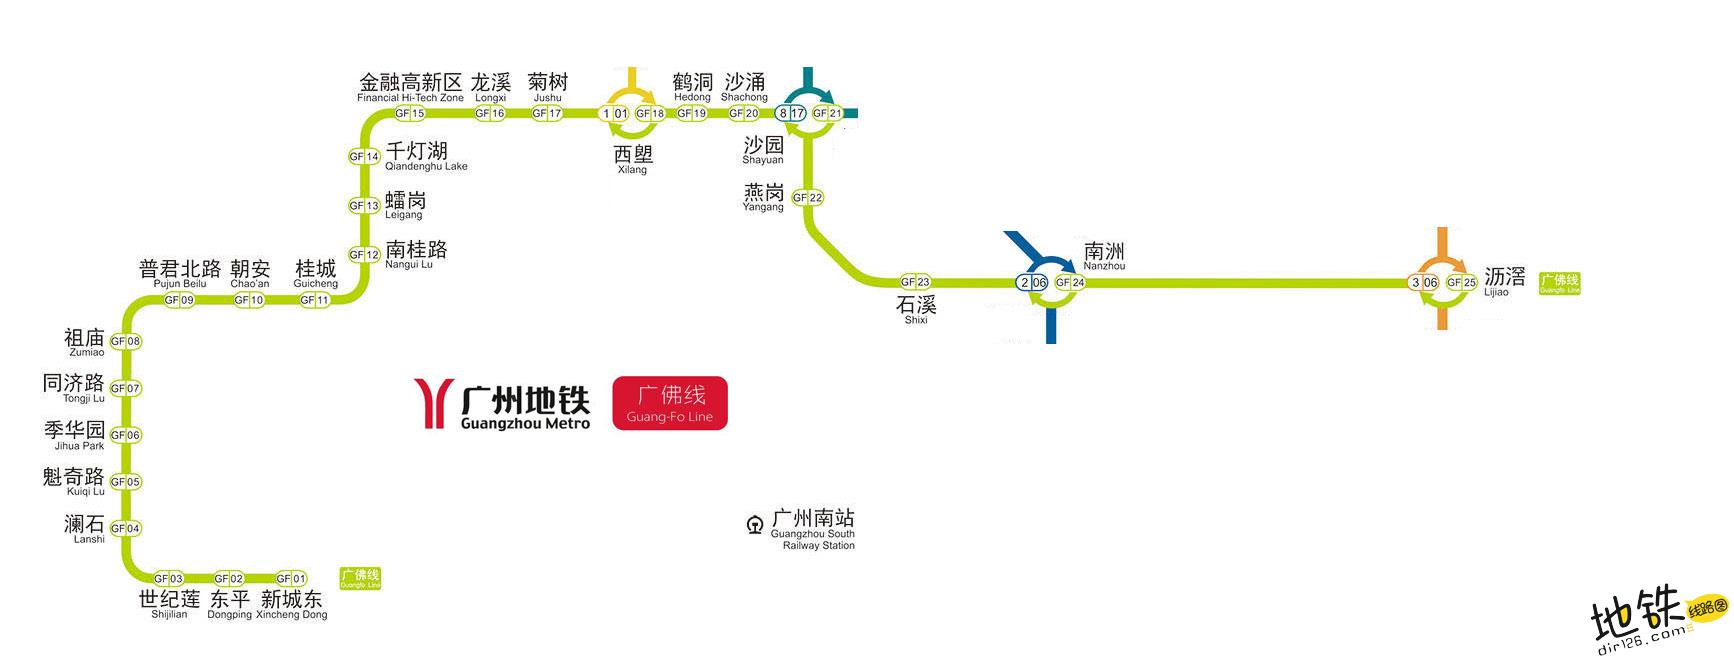 广州地铁广佛线线路图运营时间票价站点查询下载